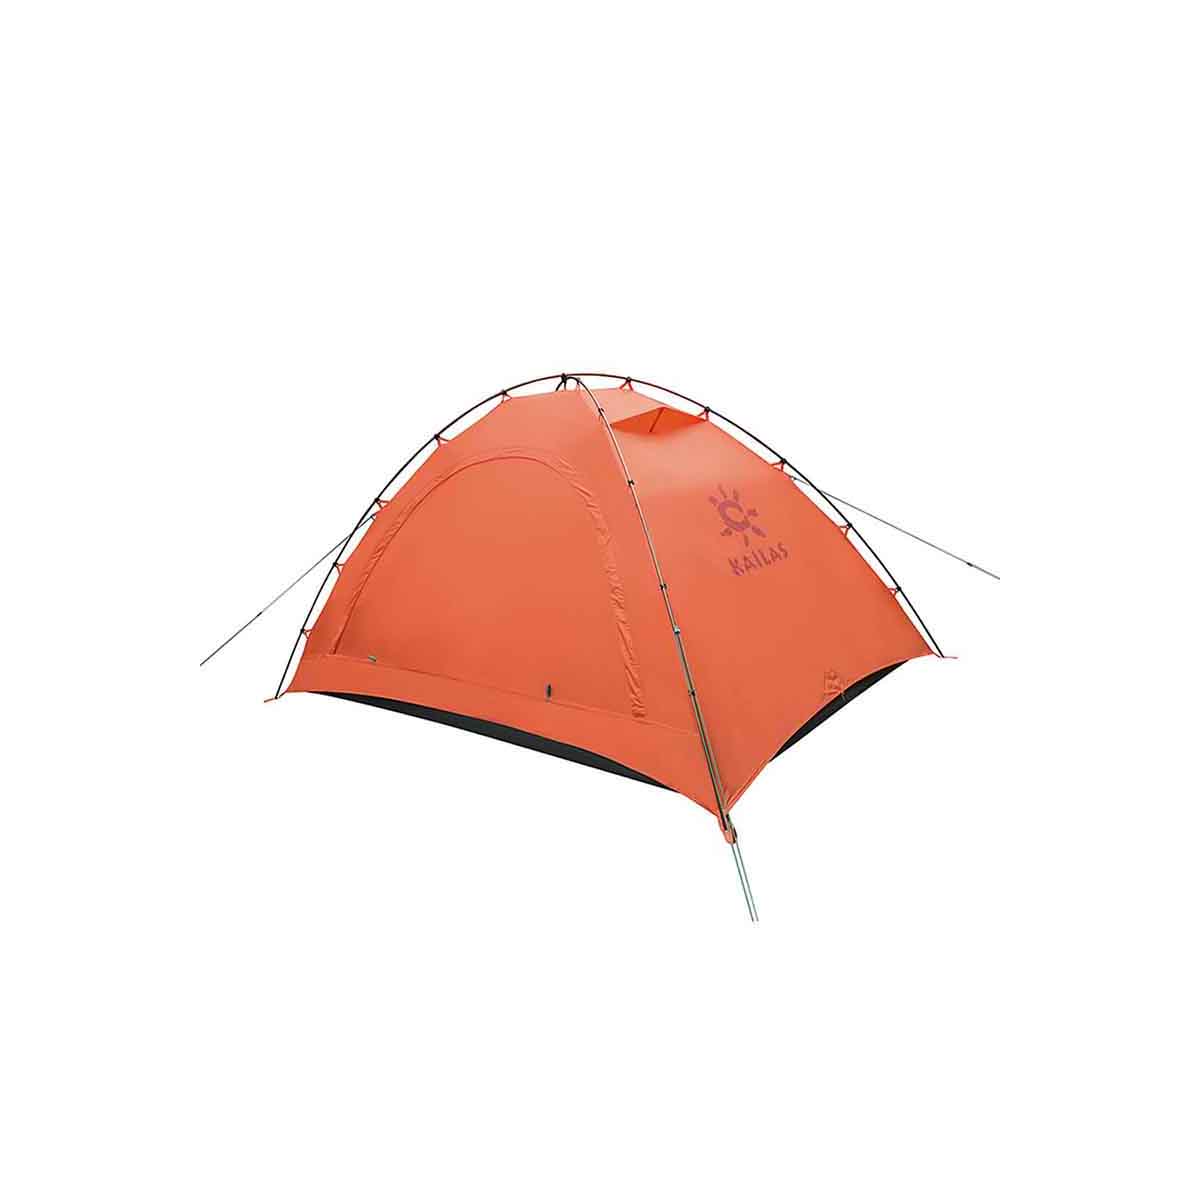 نکته خرید - قیمت روز چادر 2 نفره کایلاس مدل Camping Tent کد KT203201 خرید